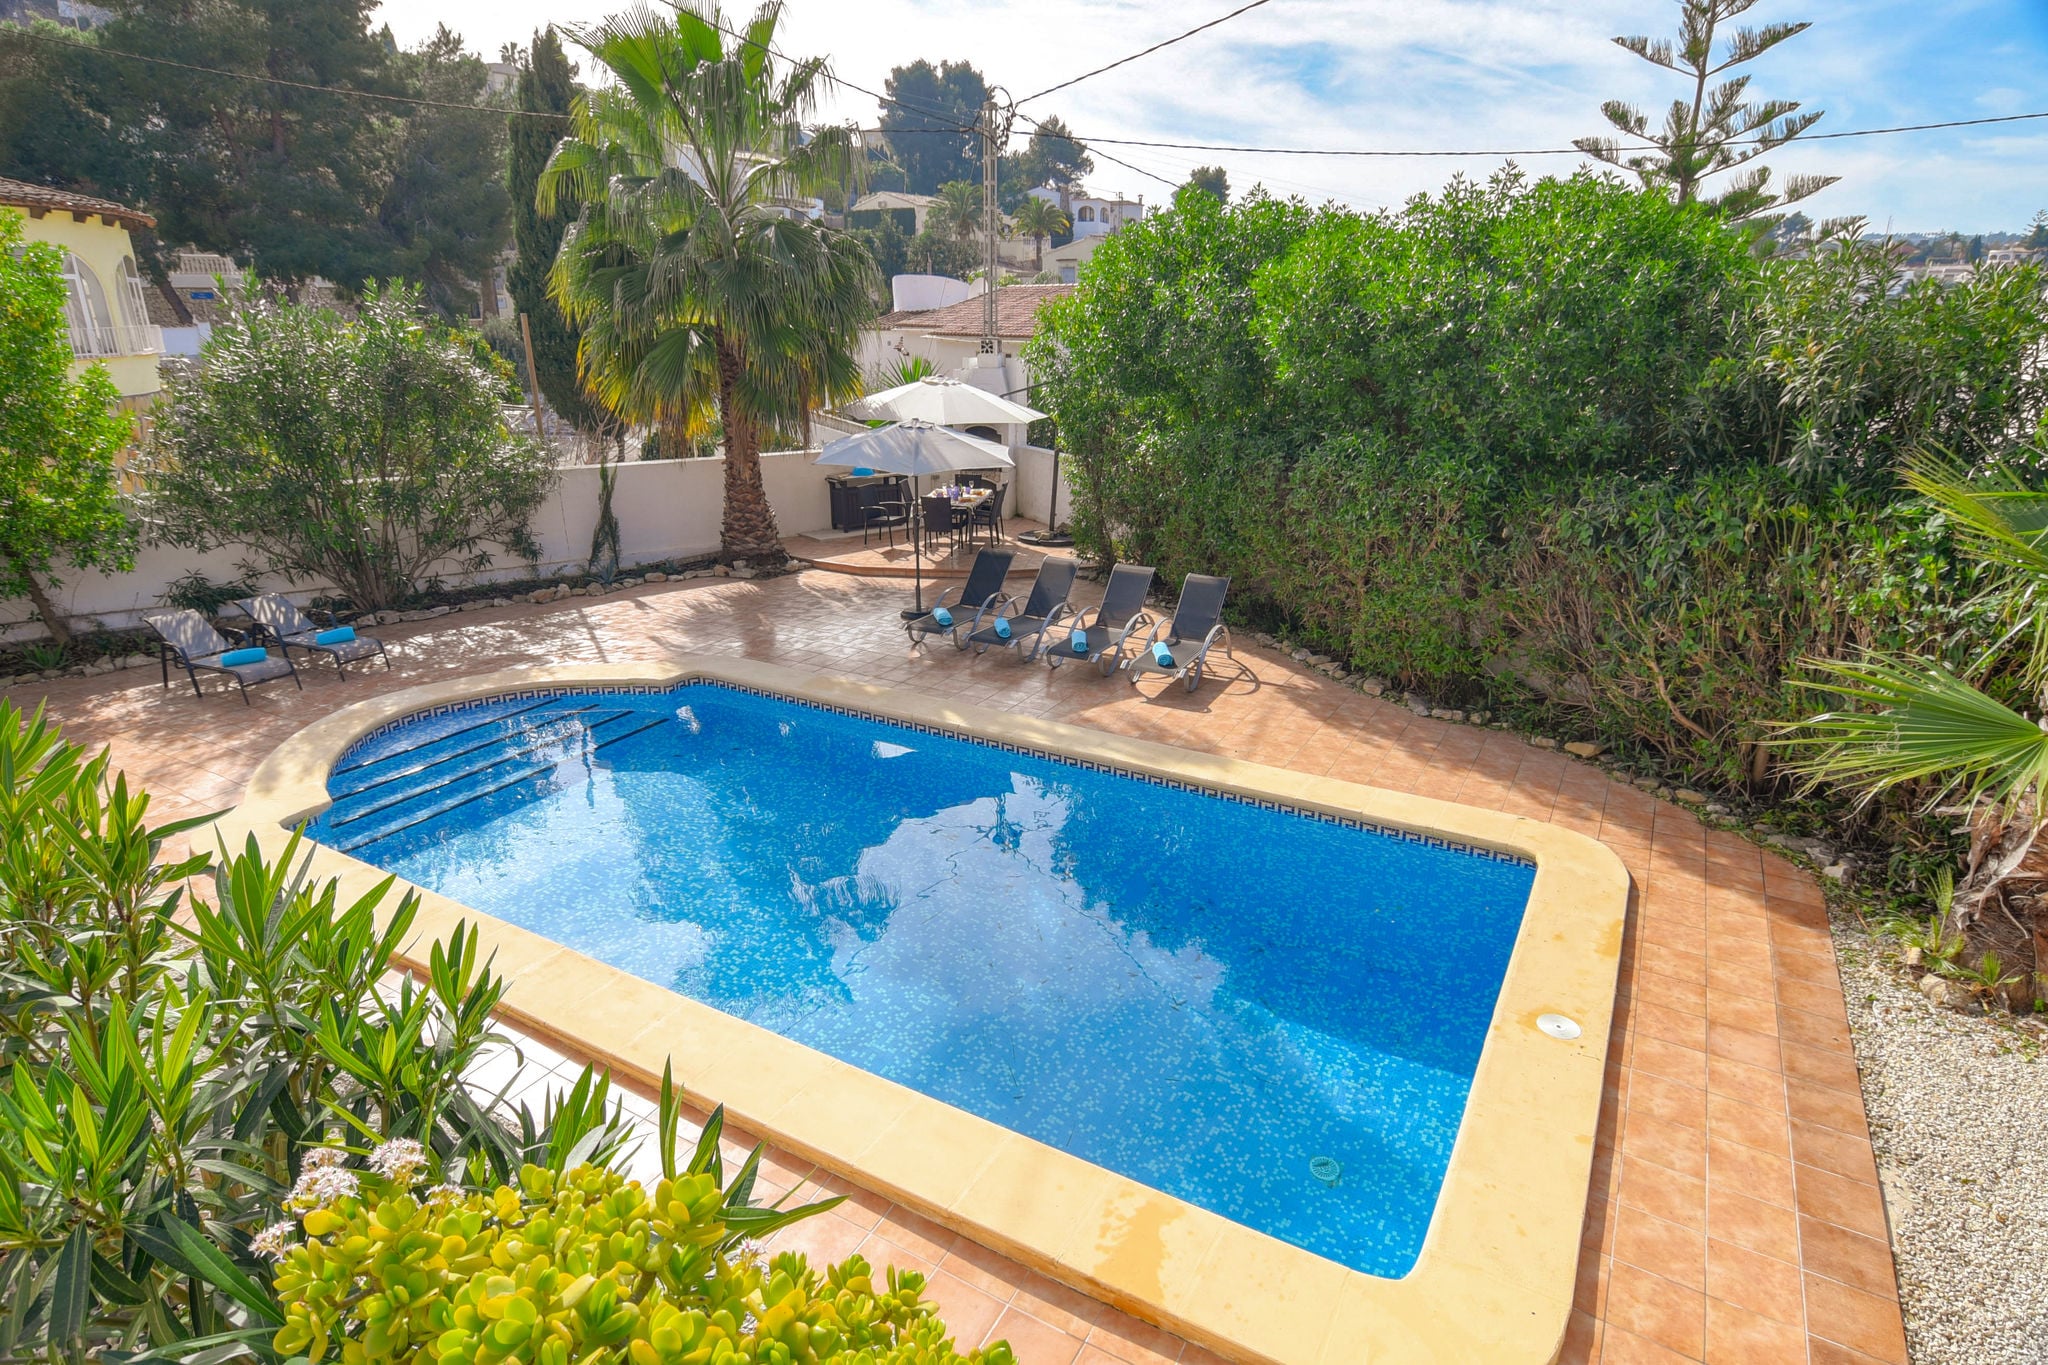 8pp Villa mooie locatie, zwembad en terrassen, dicht bij de mooiste strandjes